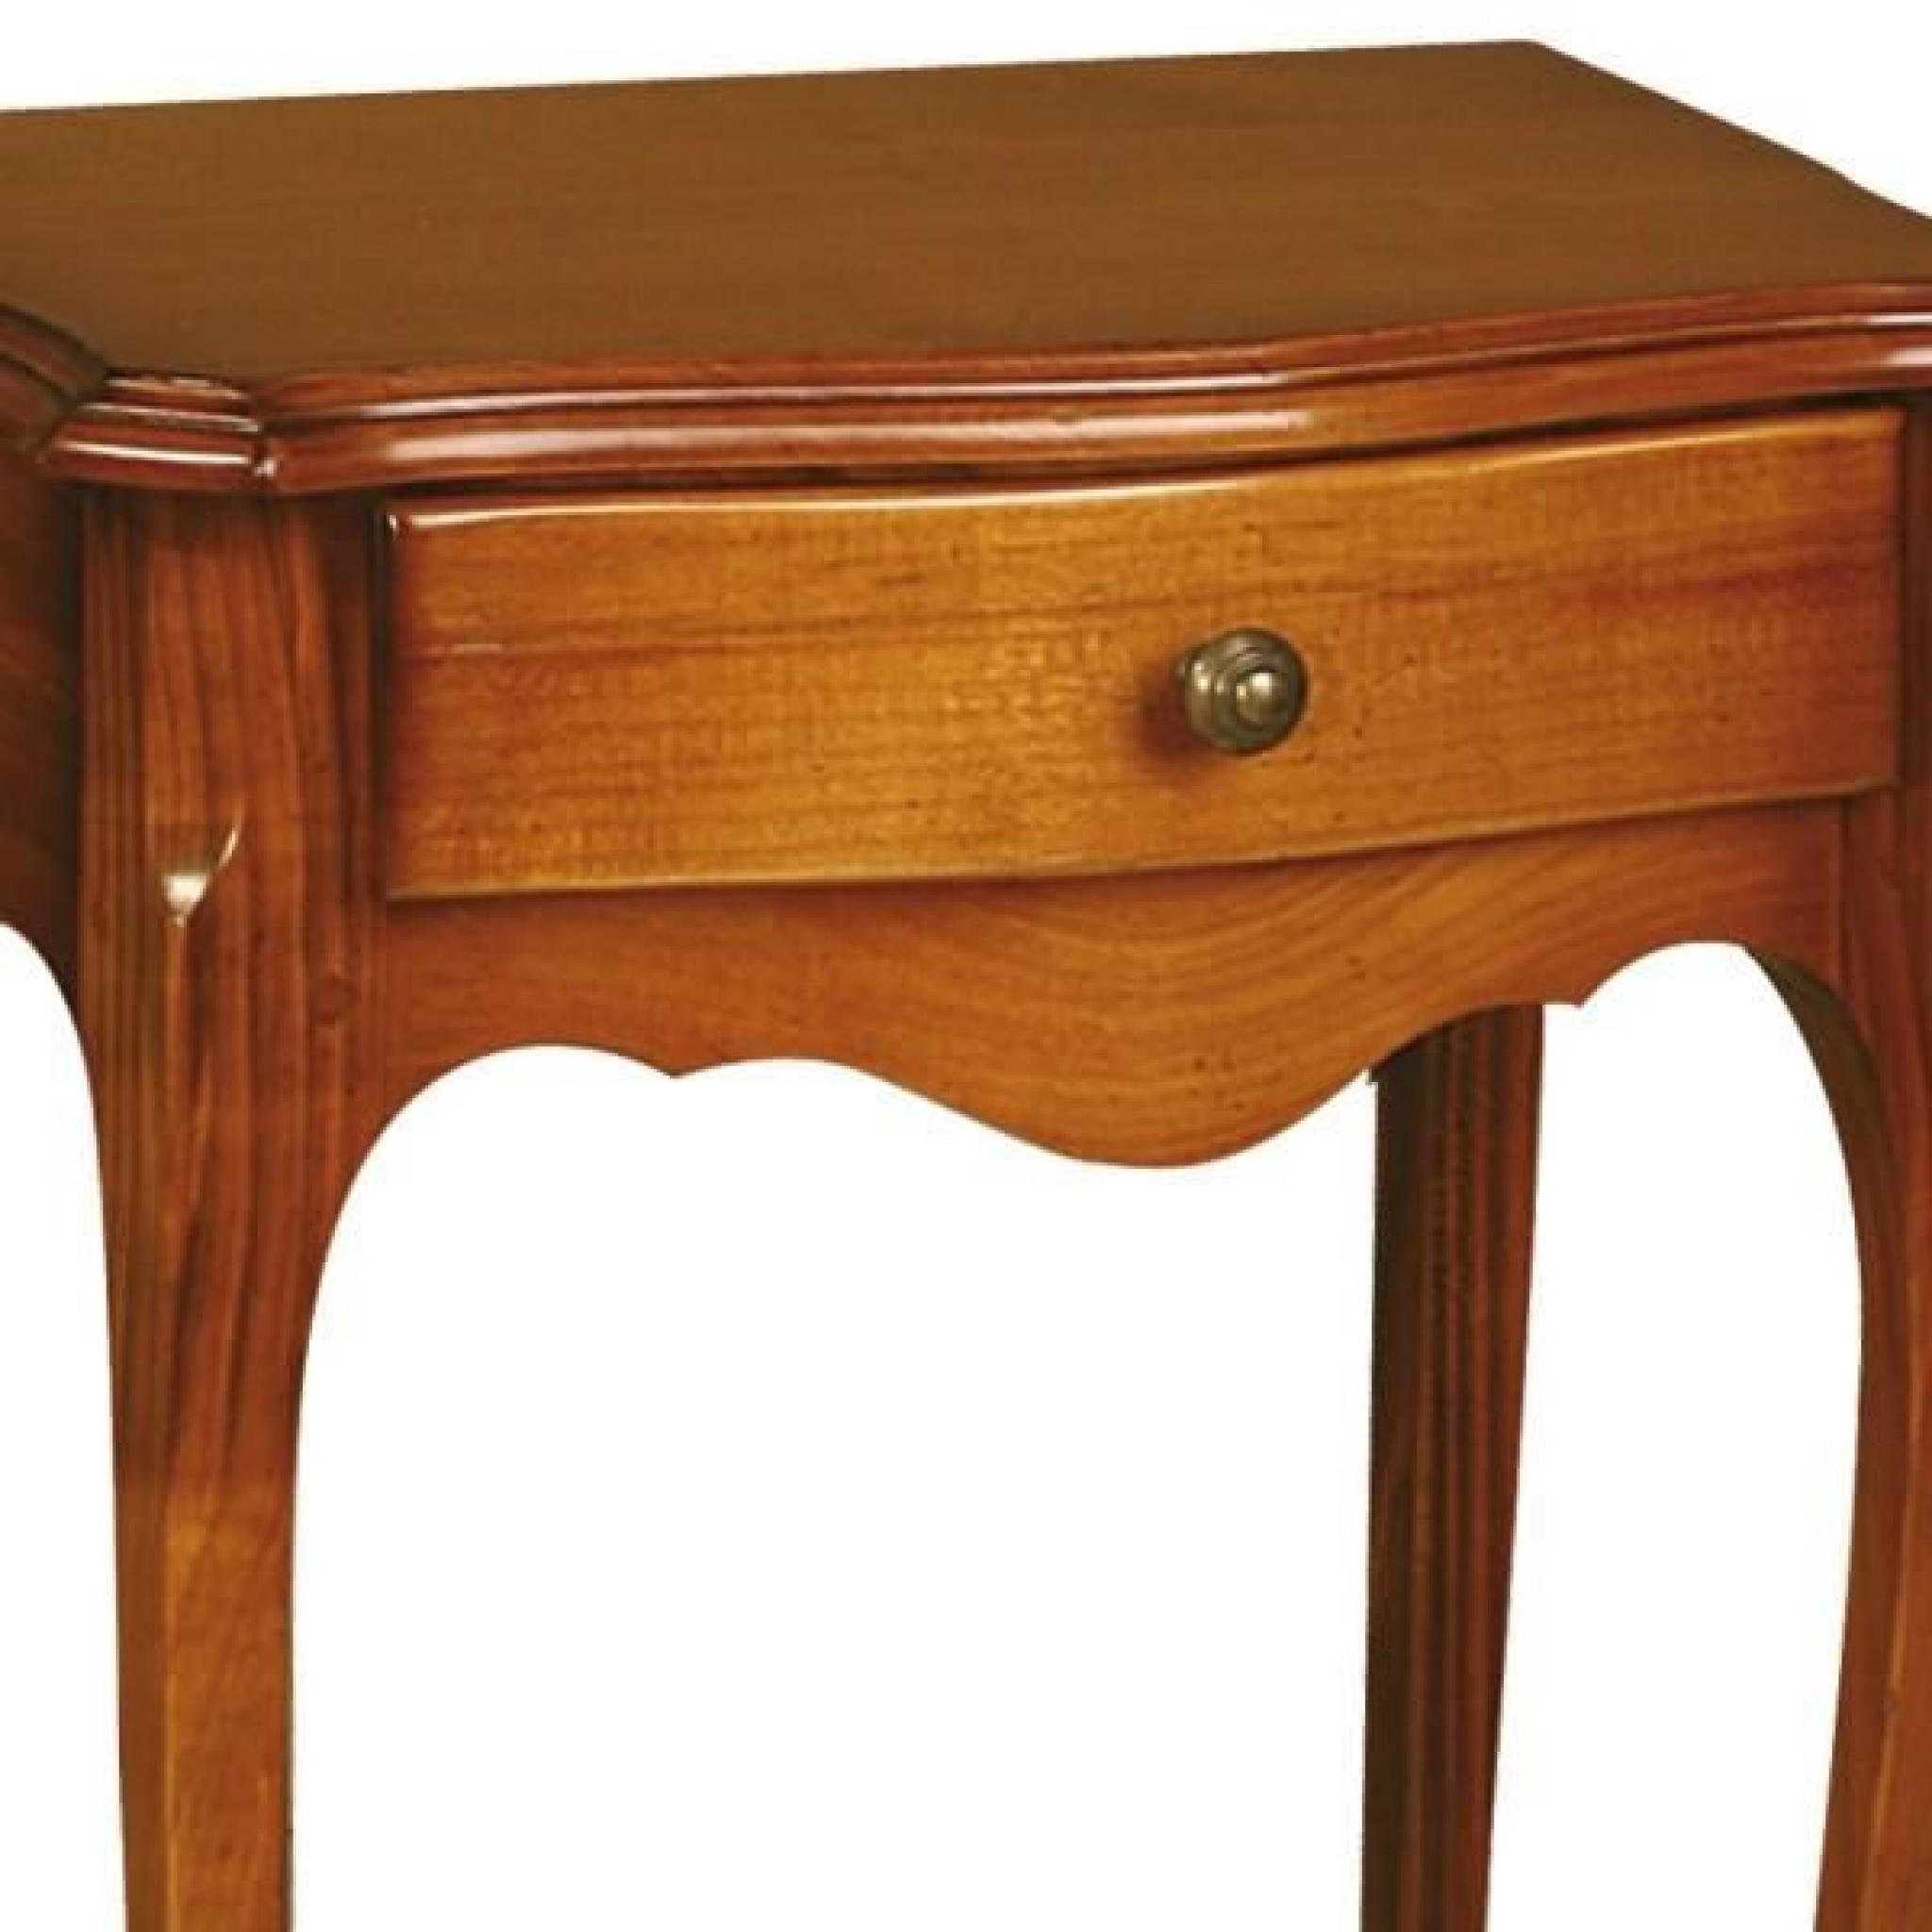 Table de chevet - TILDA - L 46 x l 31 x H 61 cm pas cher